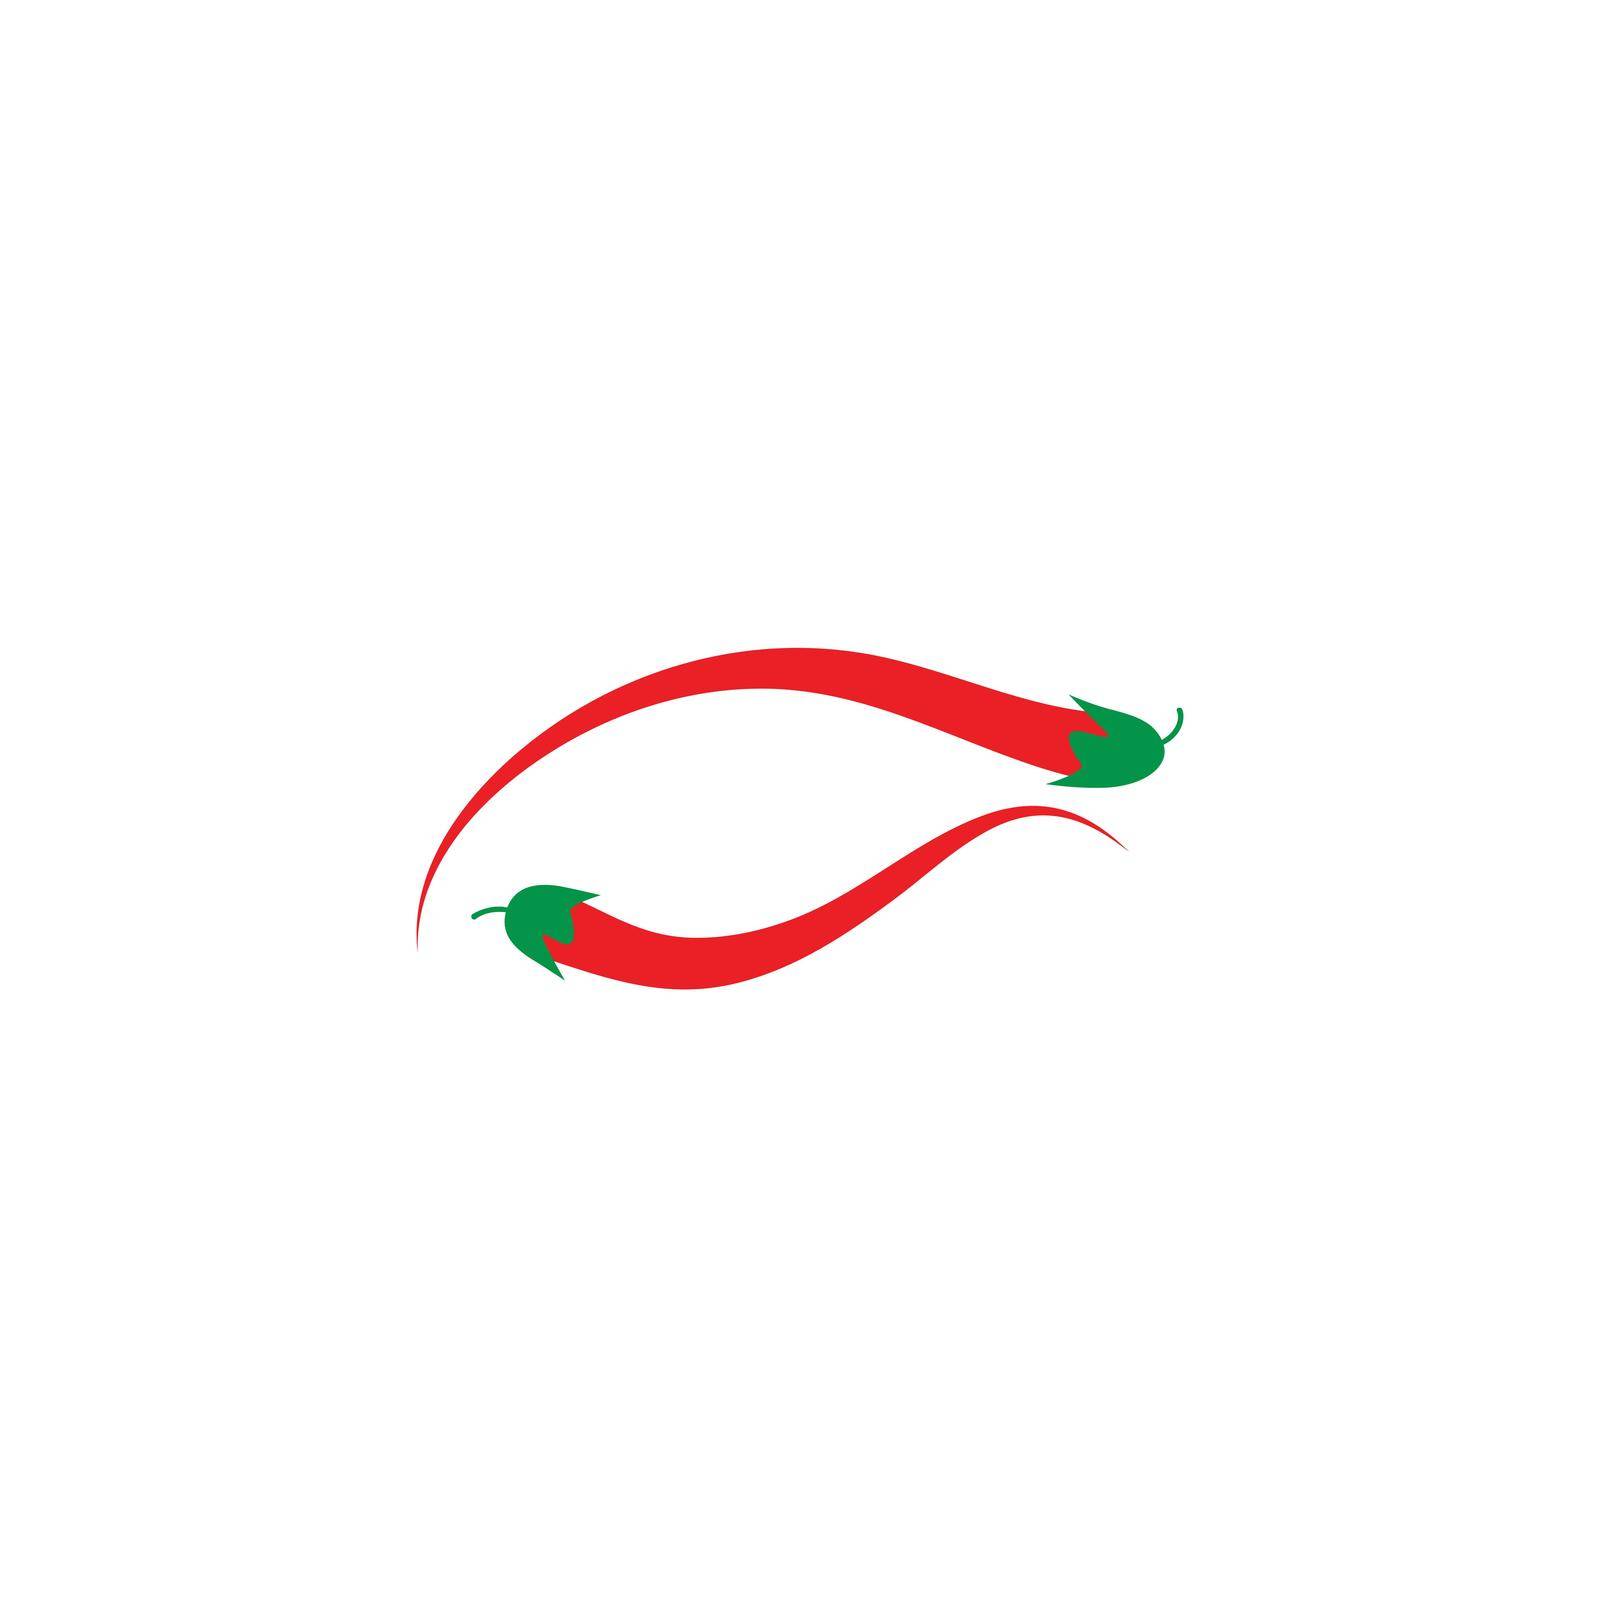 Hot Chili logo by awk